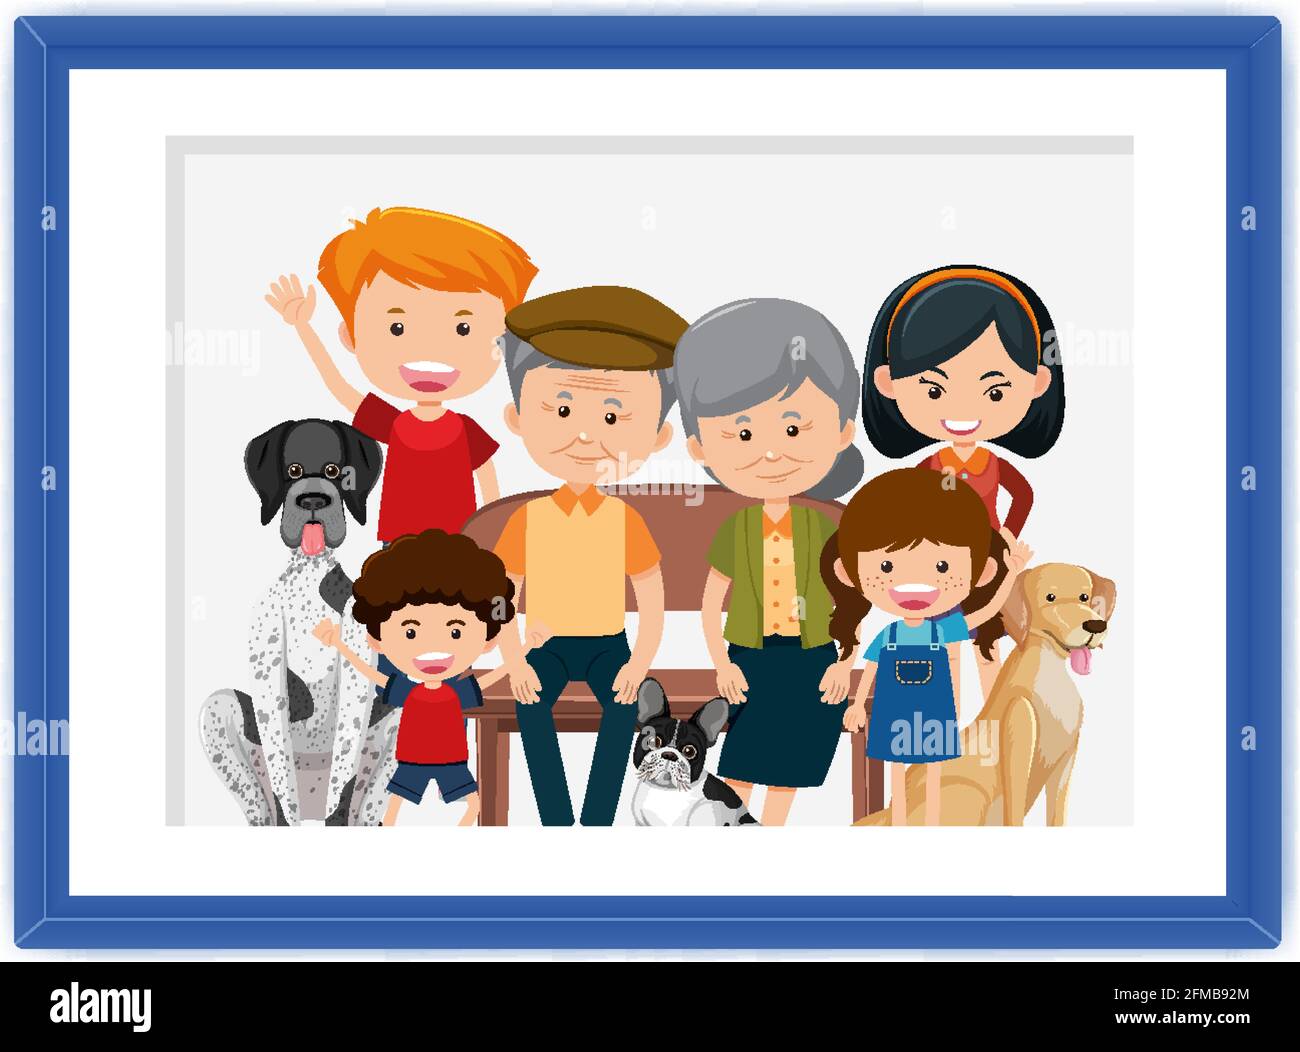 Dessin animé d'une famille heureuse dans une illustration de cadre Image  Vectorielle Stock - Alamy